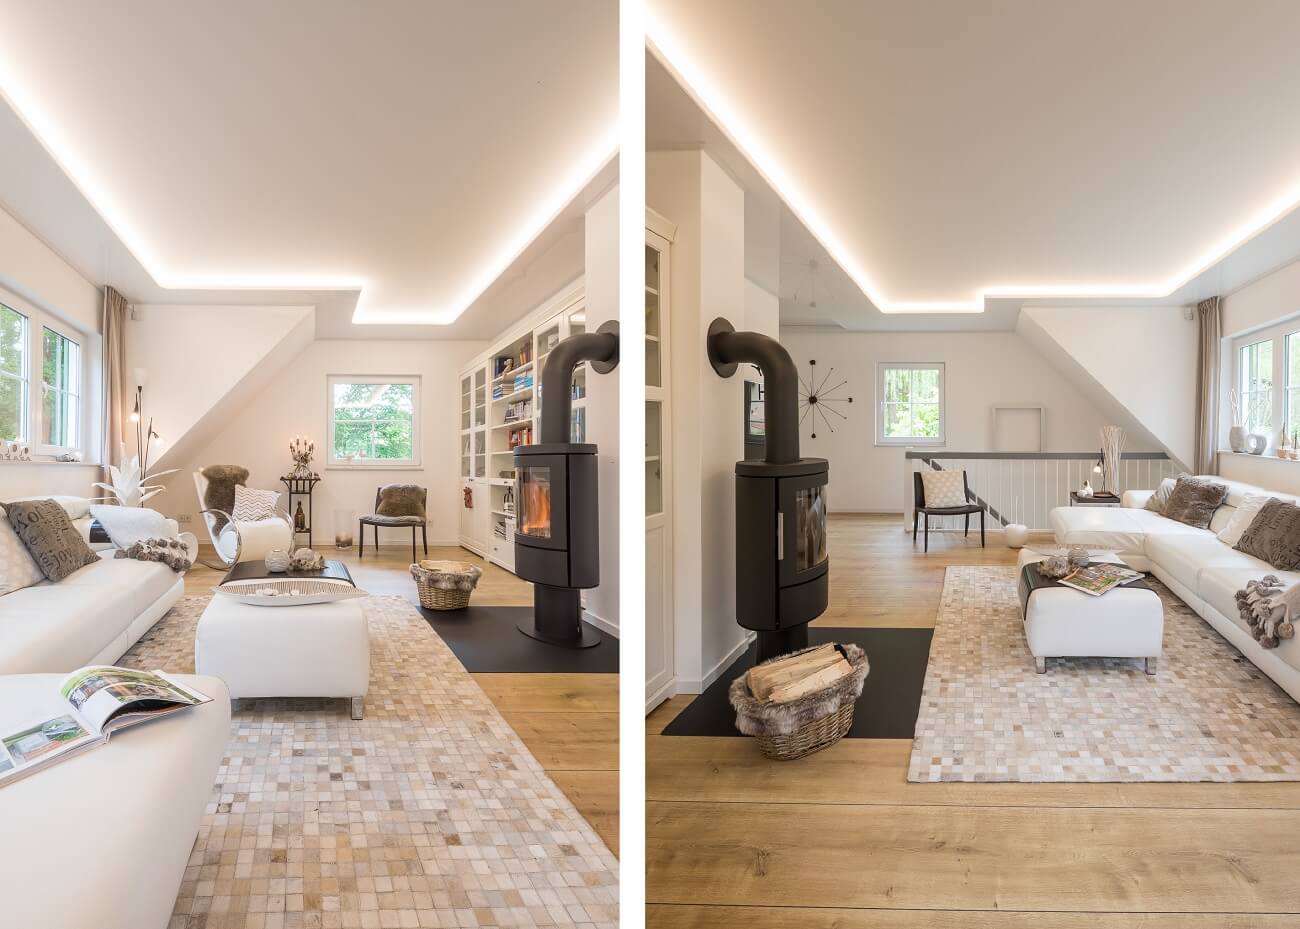 Plameco Spanndecken: Wohnzimmer, Spanndecke, LED-Stripe, dimmbare Tunable-White-Technologie, Tageslicht